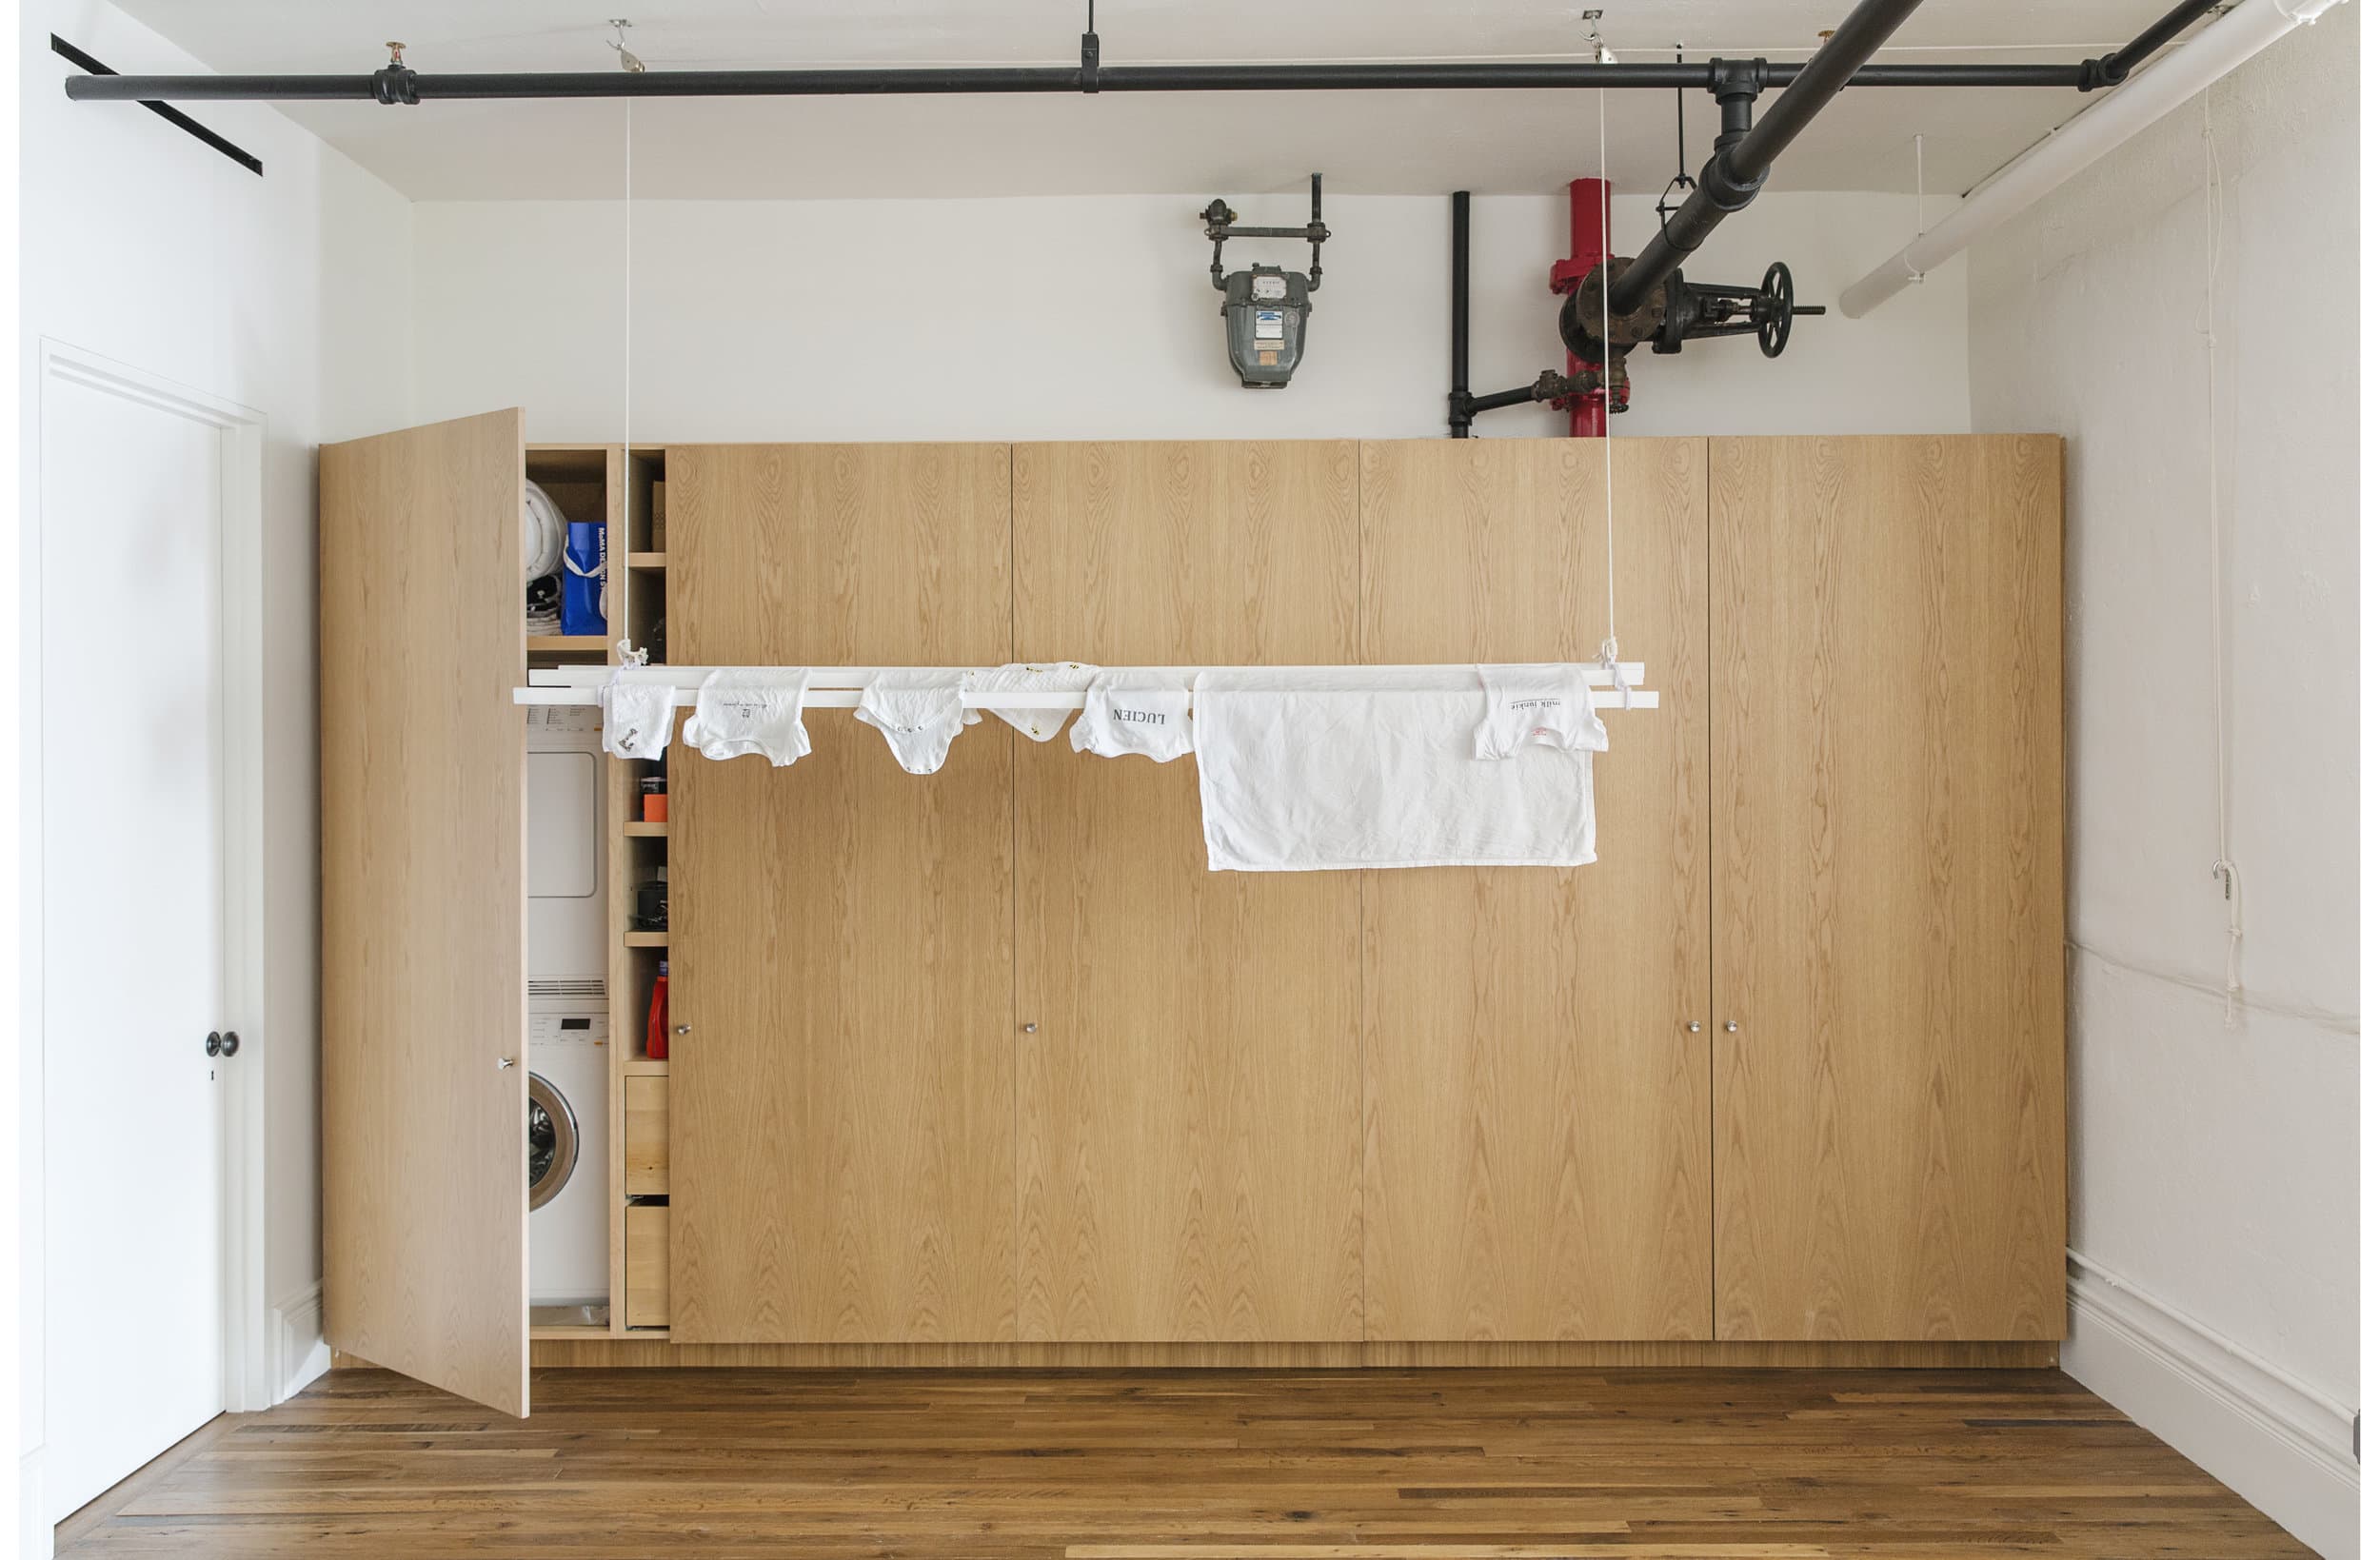 Bigger Laundry Room Or Bigger Closet? - Emily A. Clark